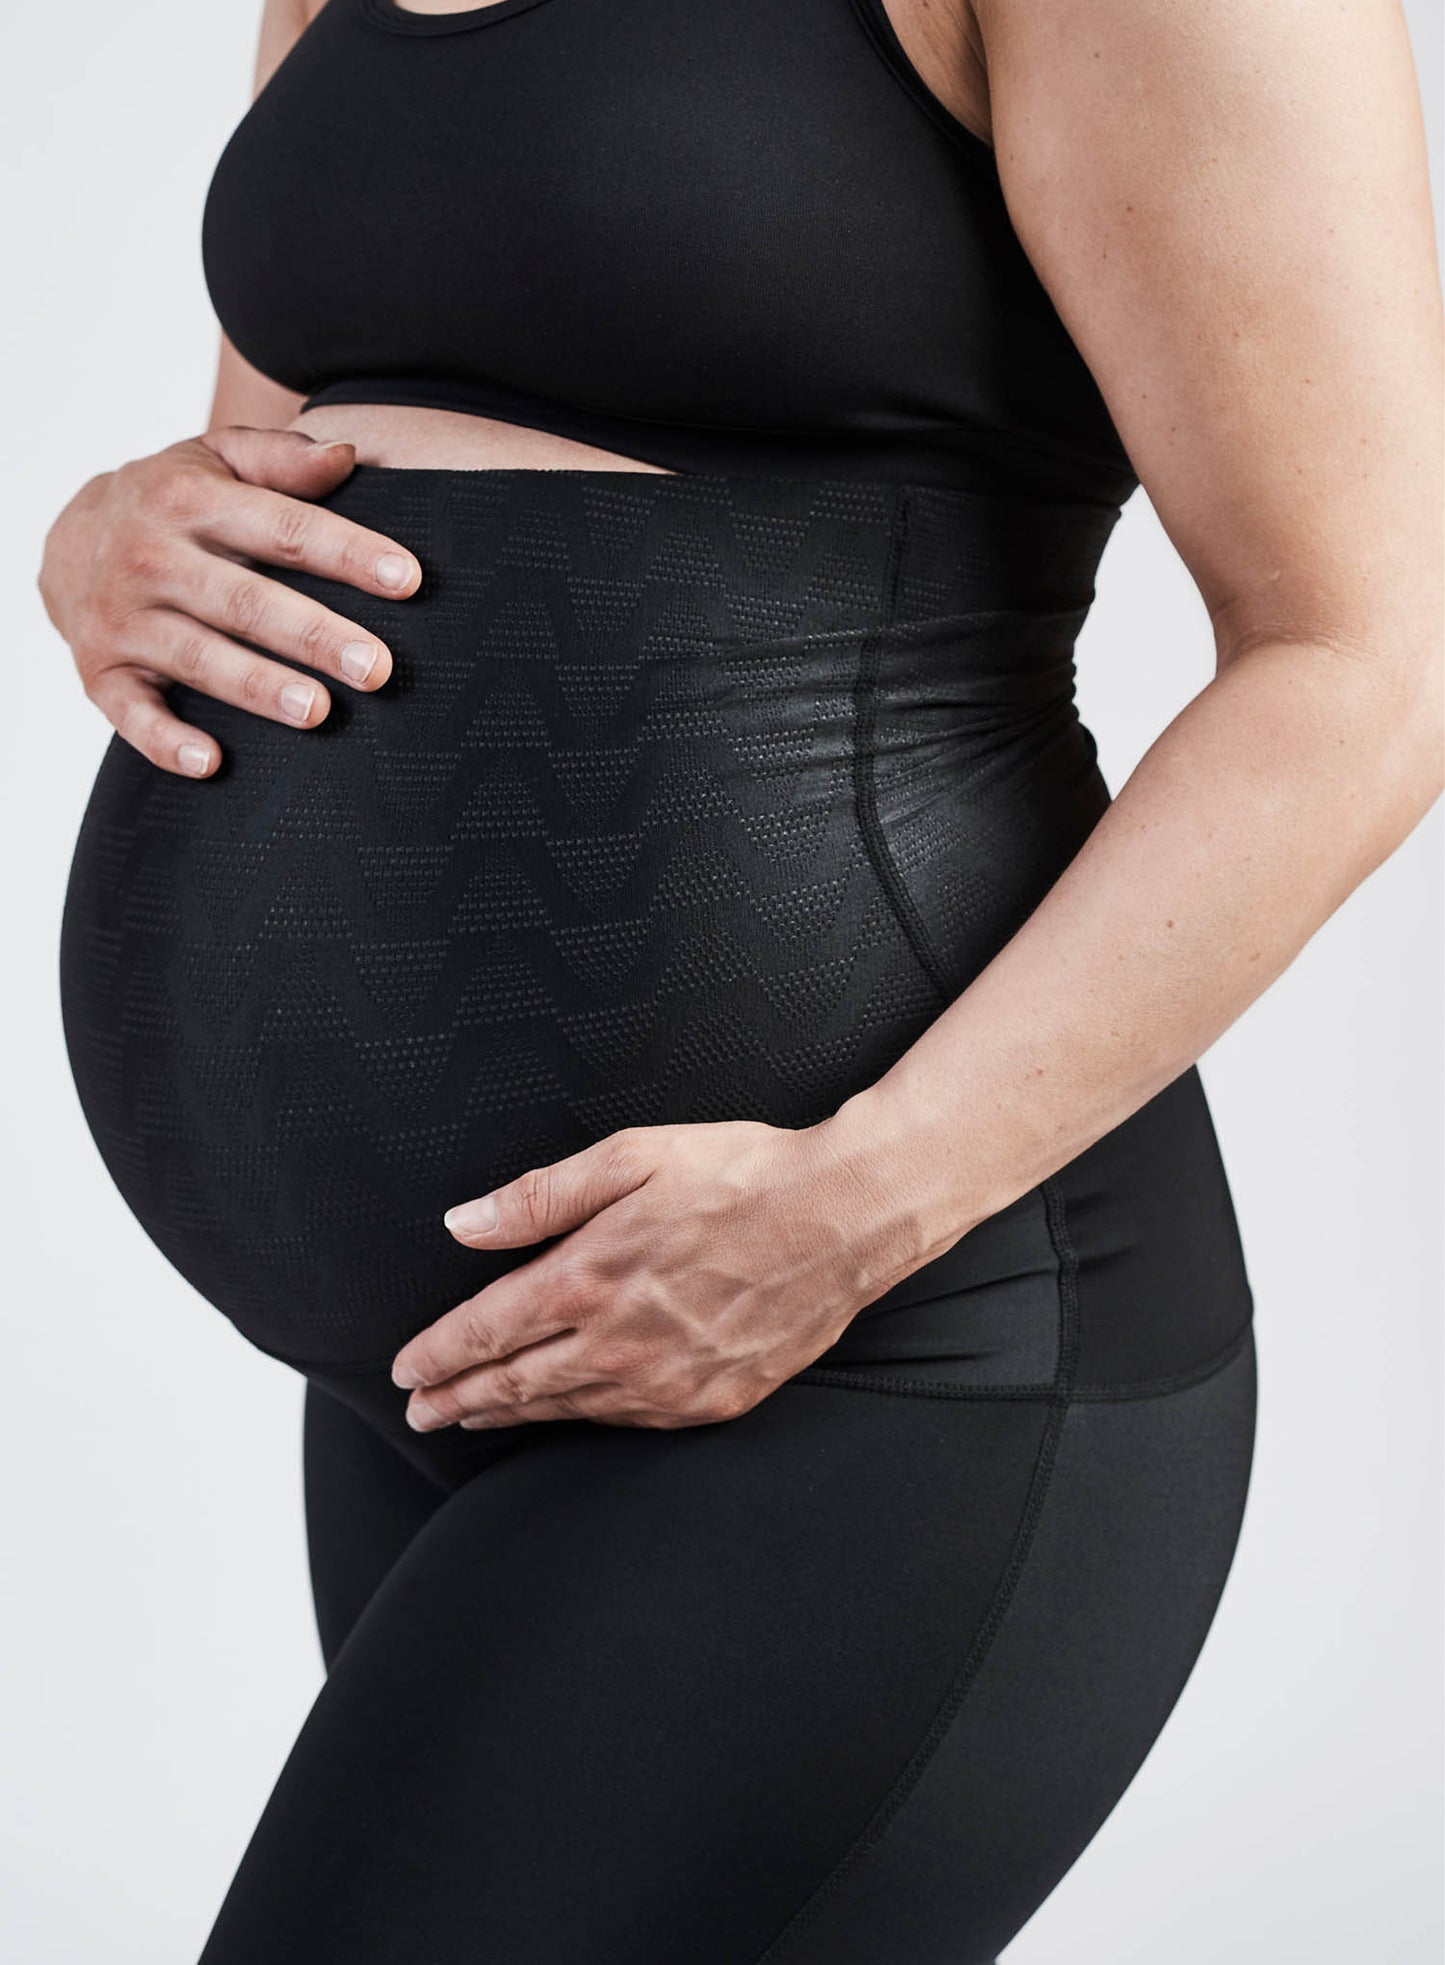 SRC: Compression Pregnancy Leggings Over The Bump Black